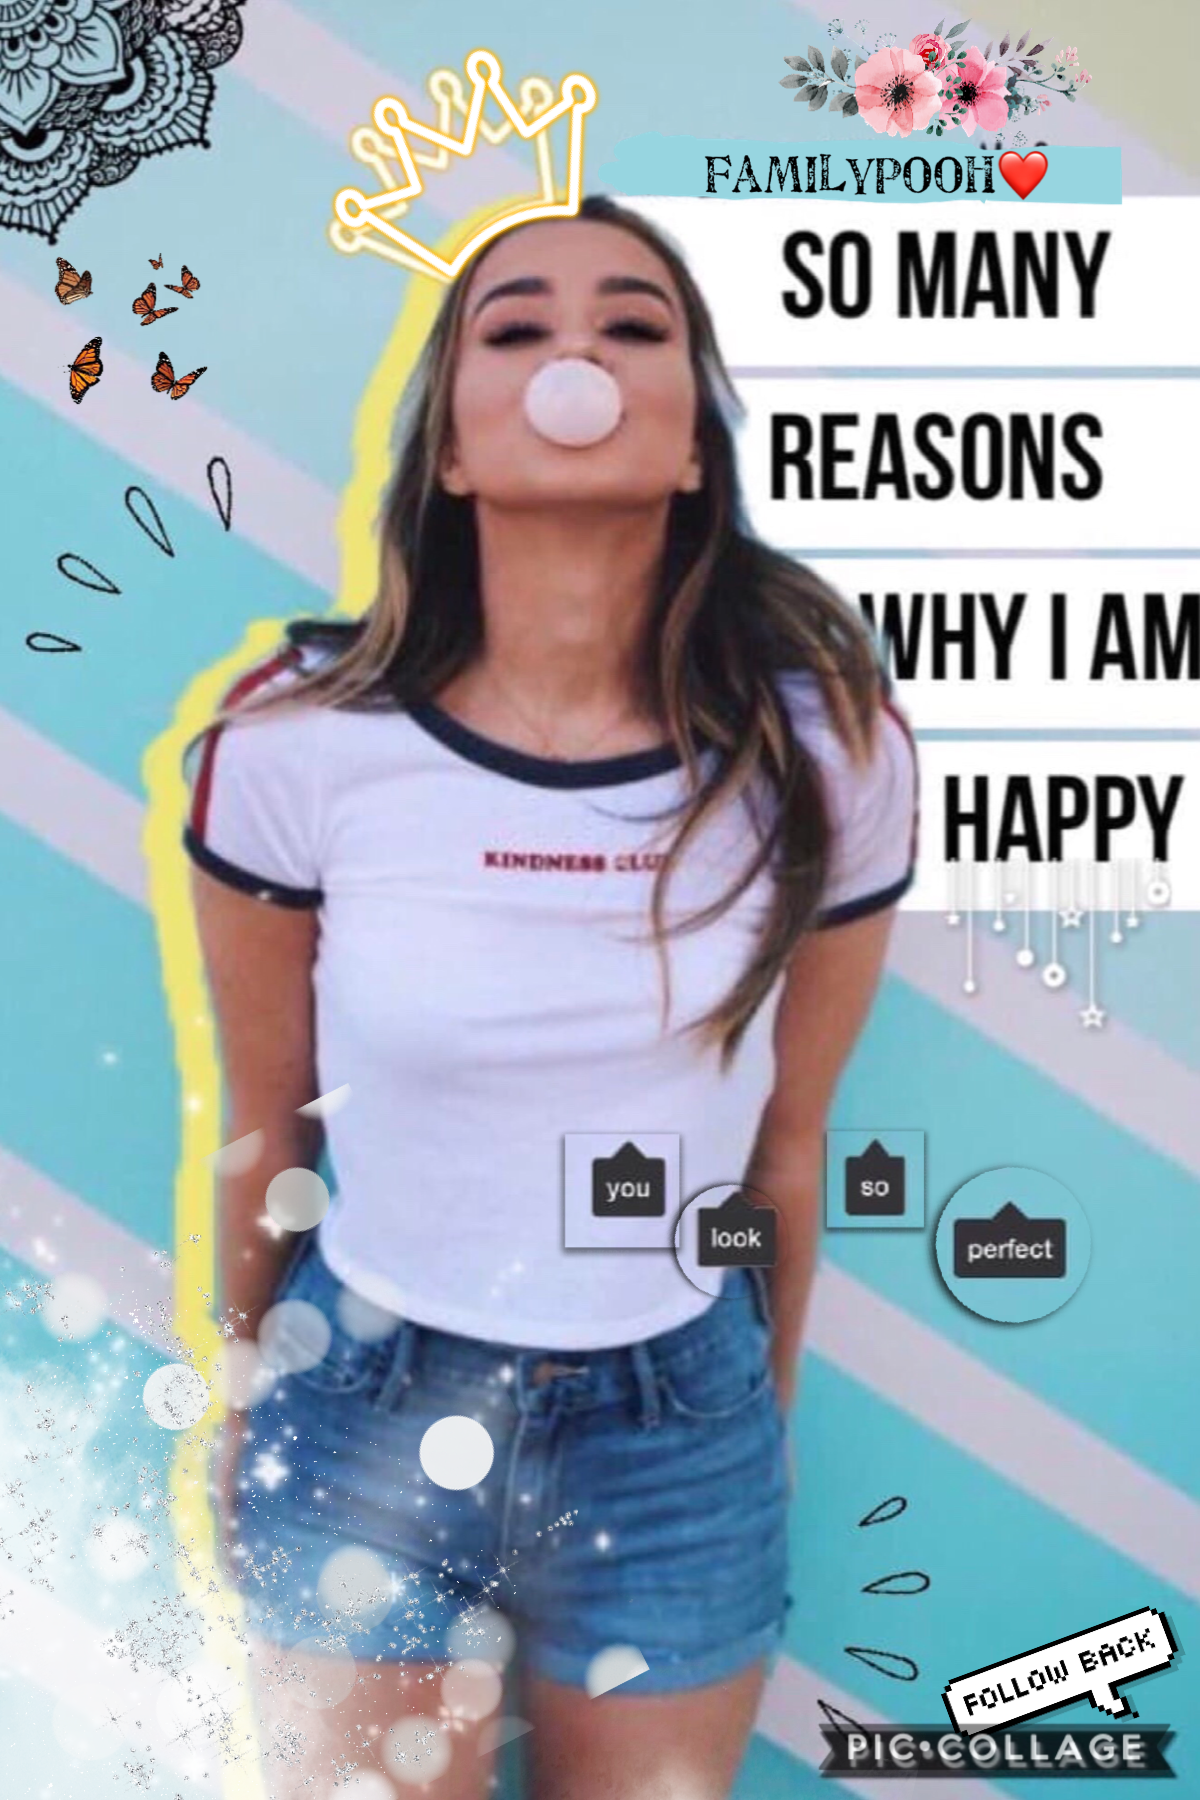 So many reasons why I am happy ! 유♥웃 ℒℴνℯ ヾ(✿❛◡❛)ノ 